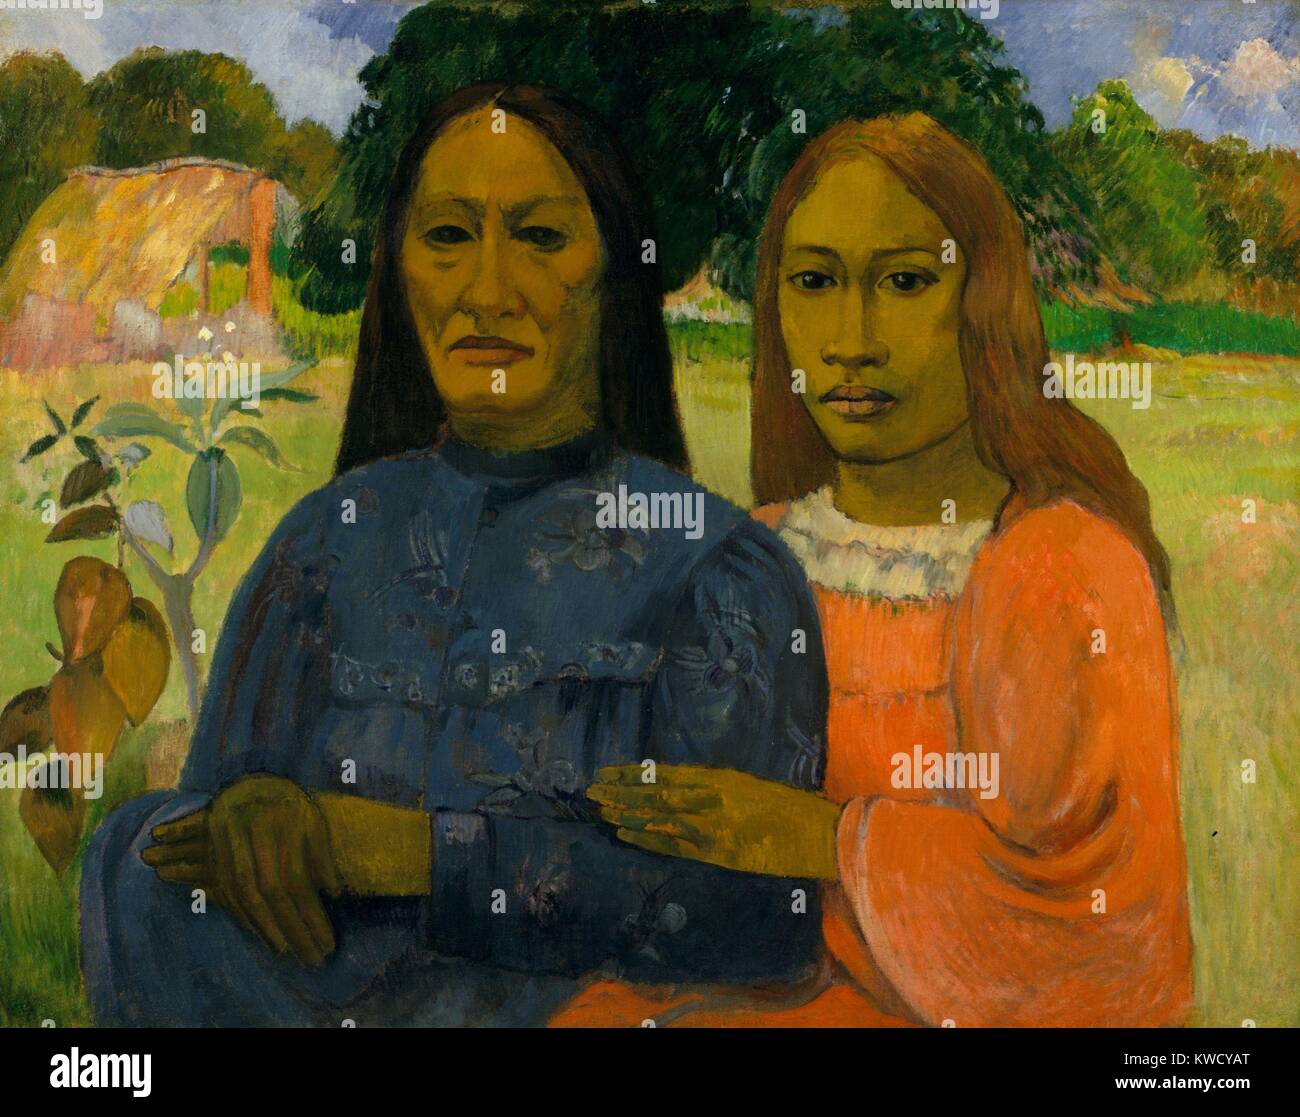 Deux femmes, de Paul Gauguin, 1901- 02, le français postimpressionnistes peinture, huile sur toile. Gauguin peint les deux femmes tahitiennes à partir d'une photographie (BSLOC 2017 5 35) Banque D'Images